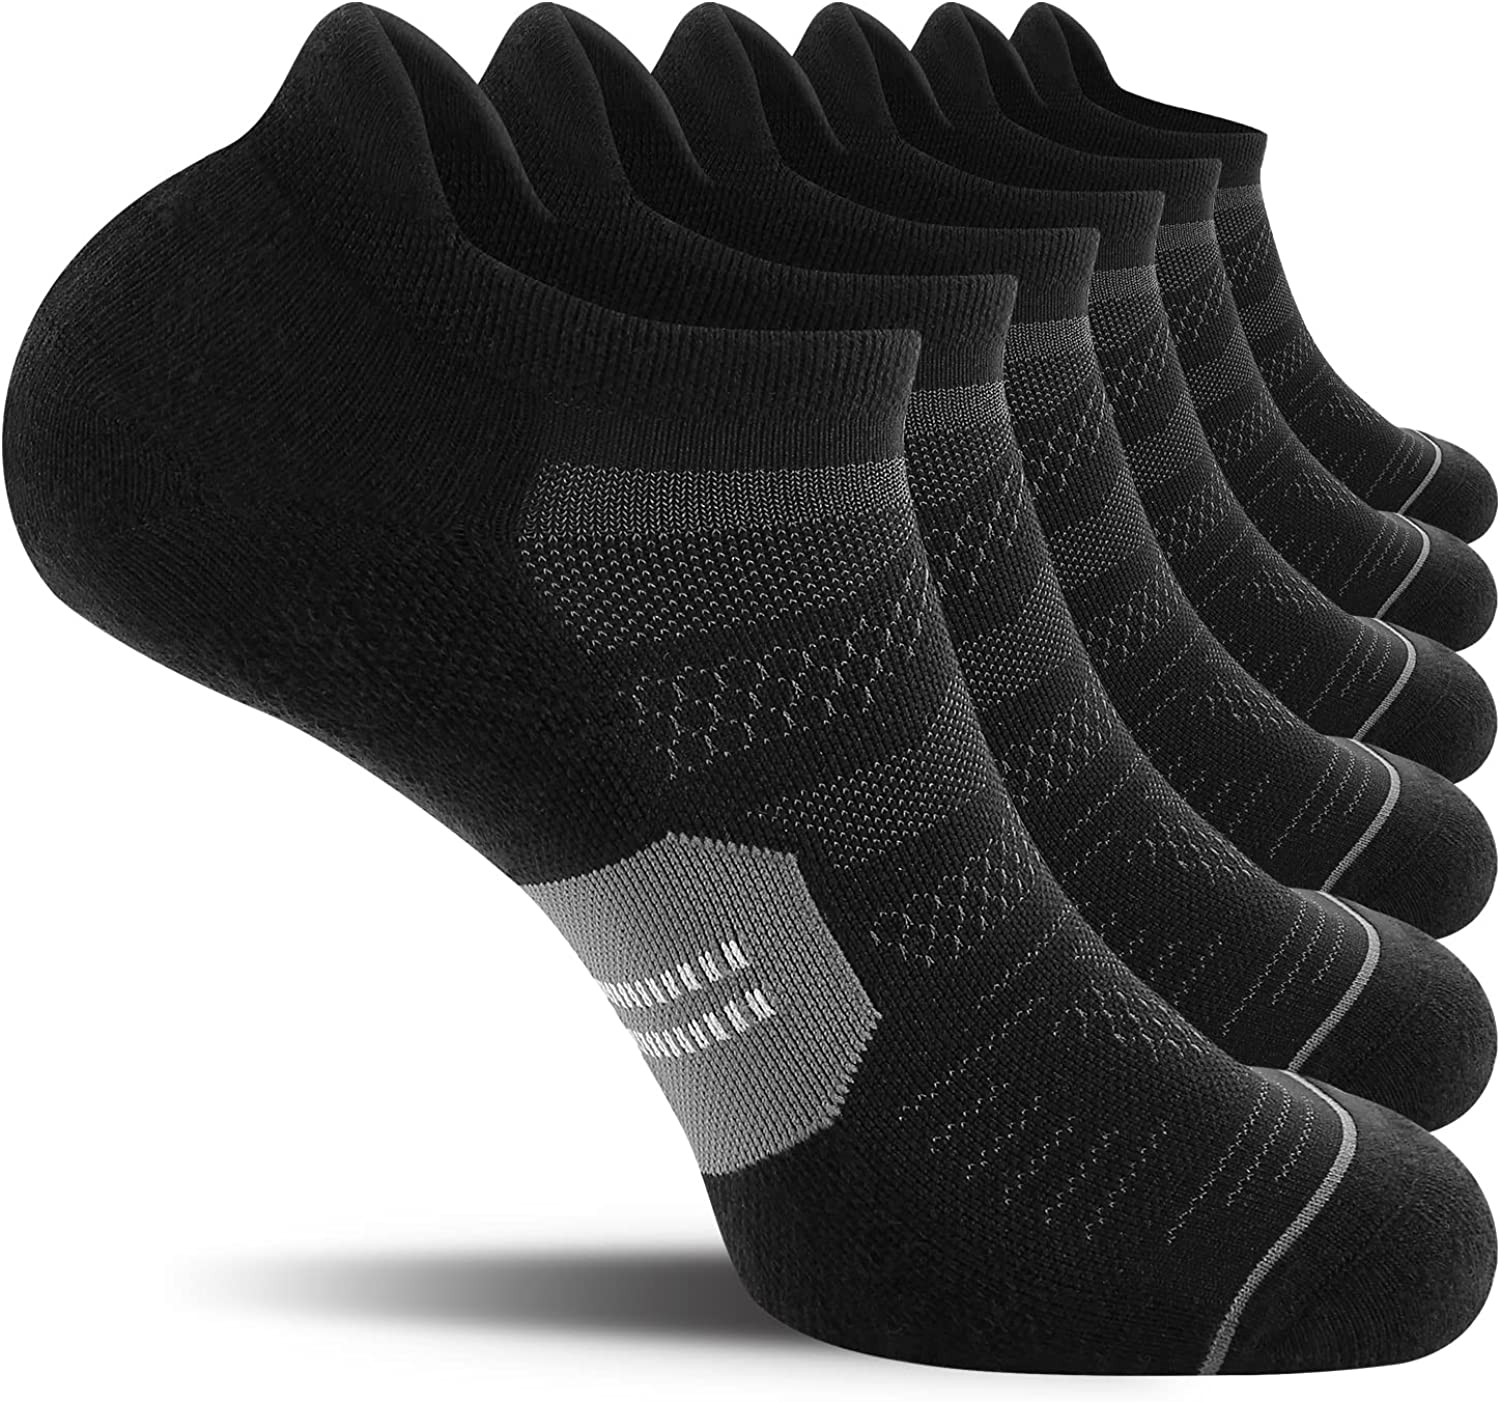  u&i socks Women's Athletic Ankle Socks with Heel Tab